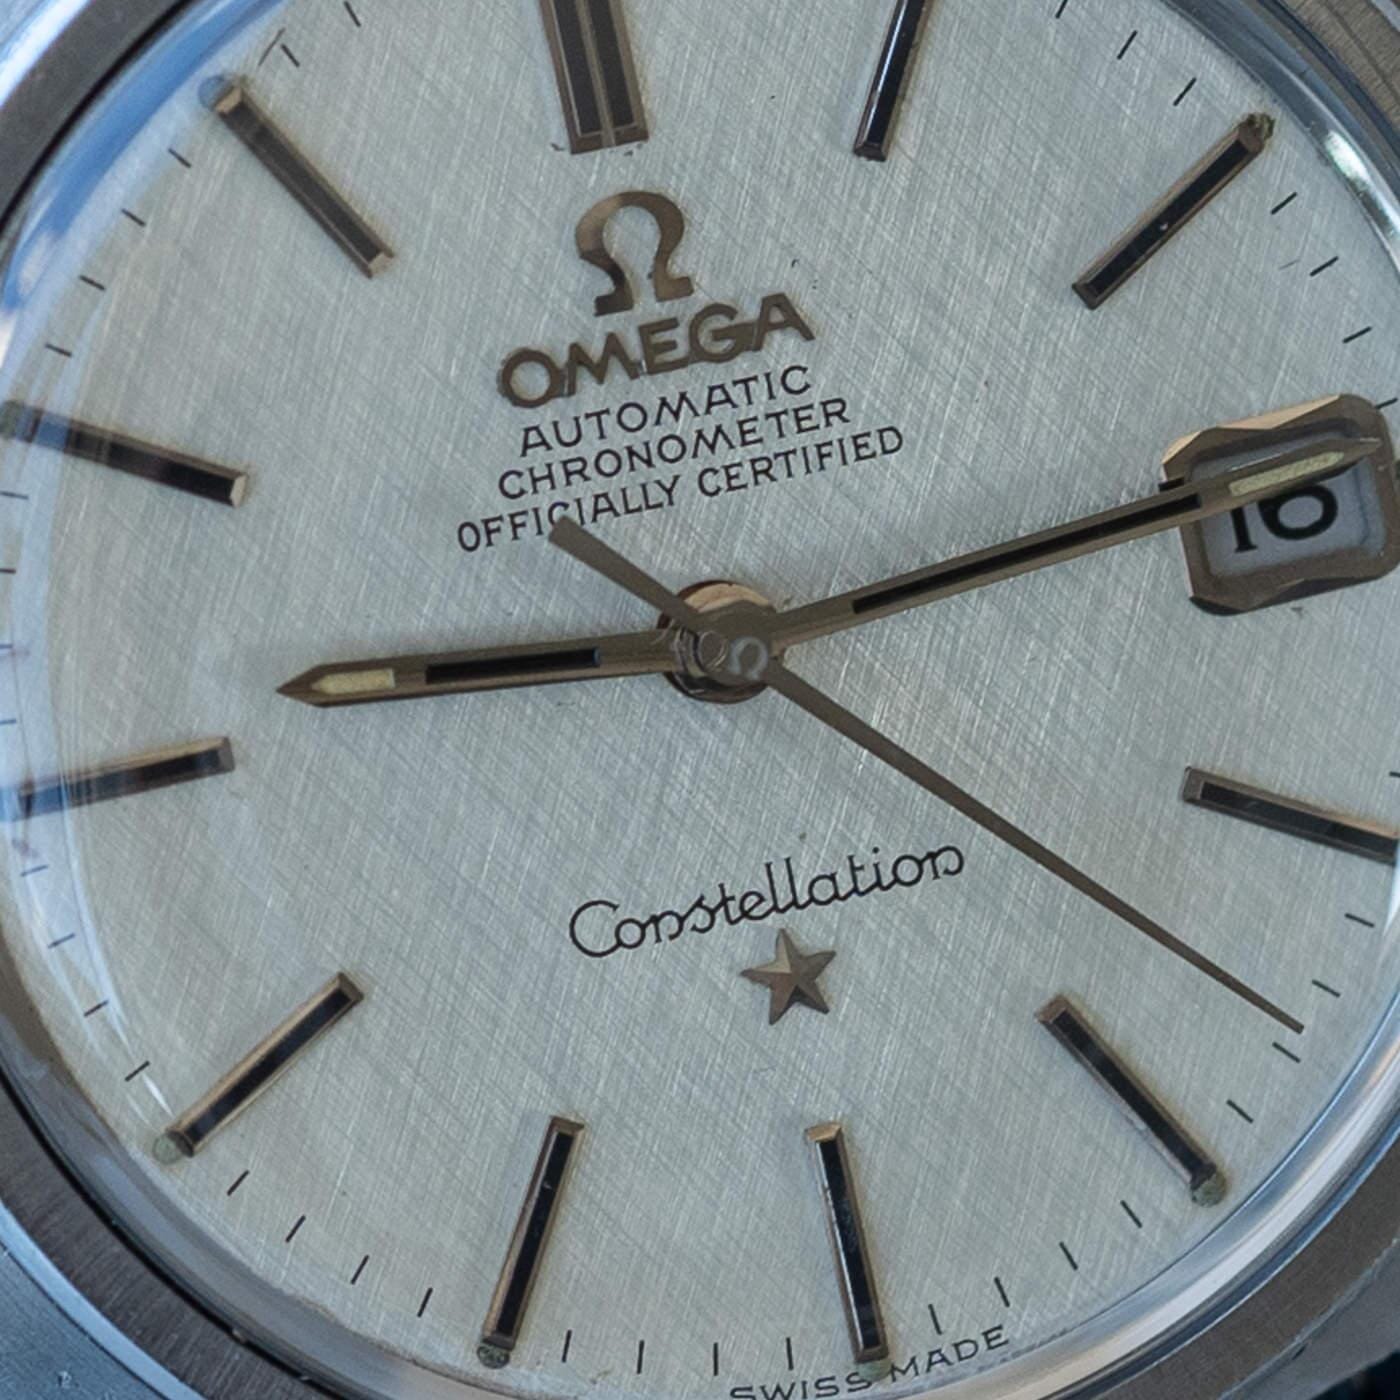 OMEGA Constellation Chronometer 168.017 SP - Arbitro